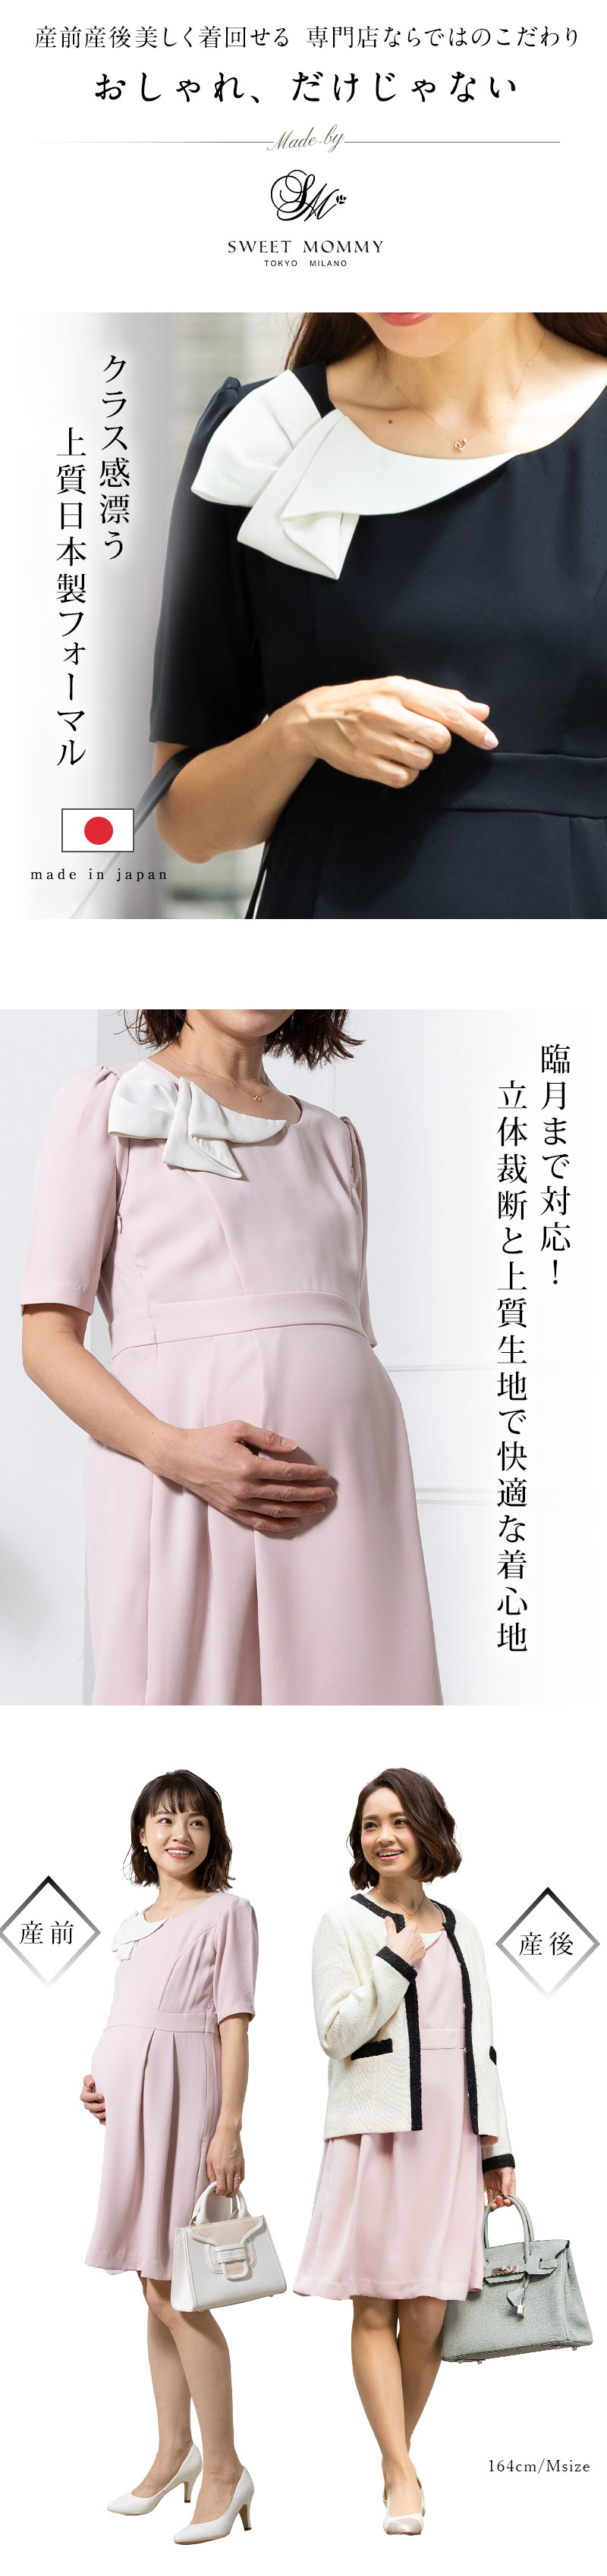 日本製 授乳ワンピース 産前産後兼用 マタニティワンピ